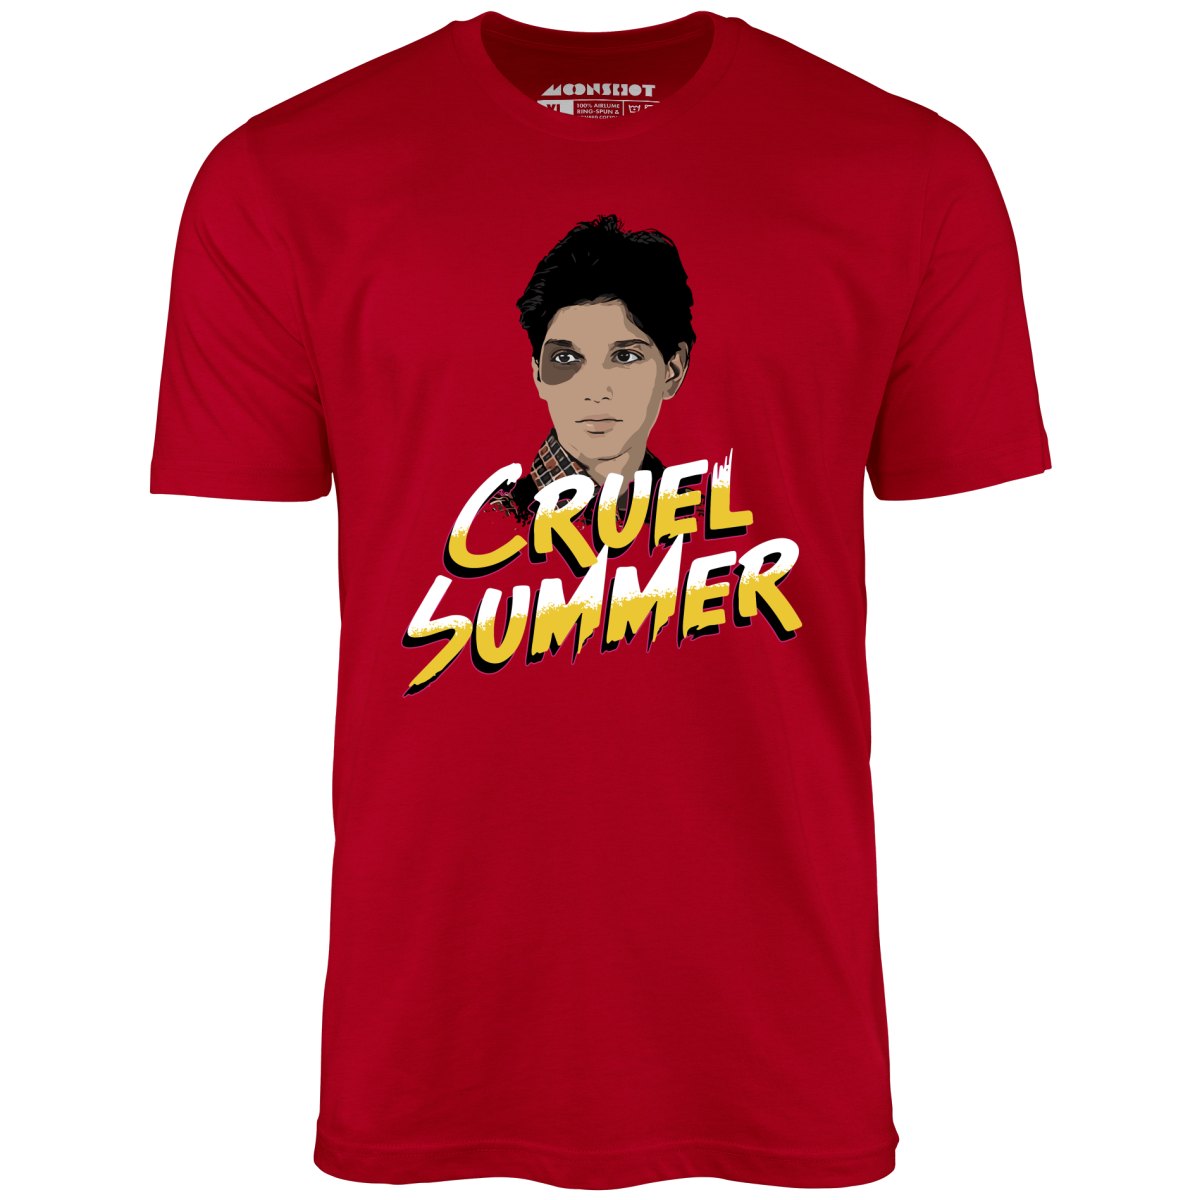 Cruel Summer - Unisex T-Shirt